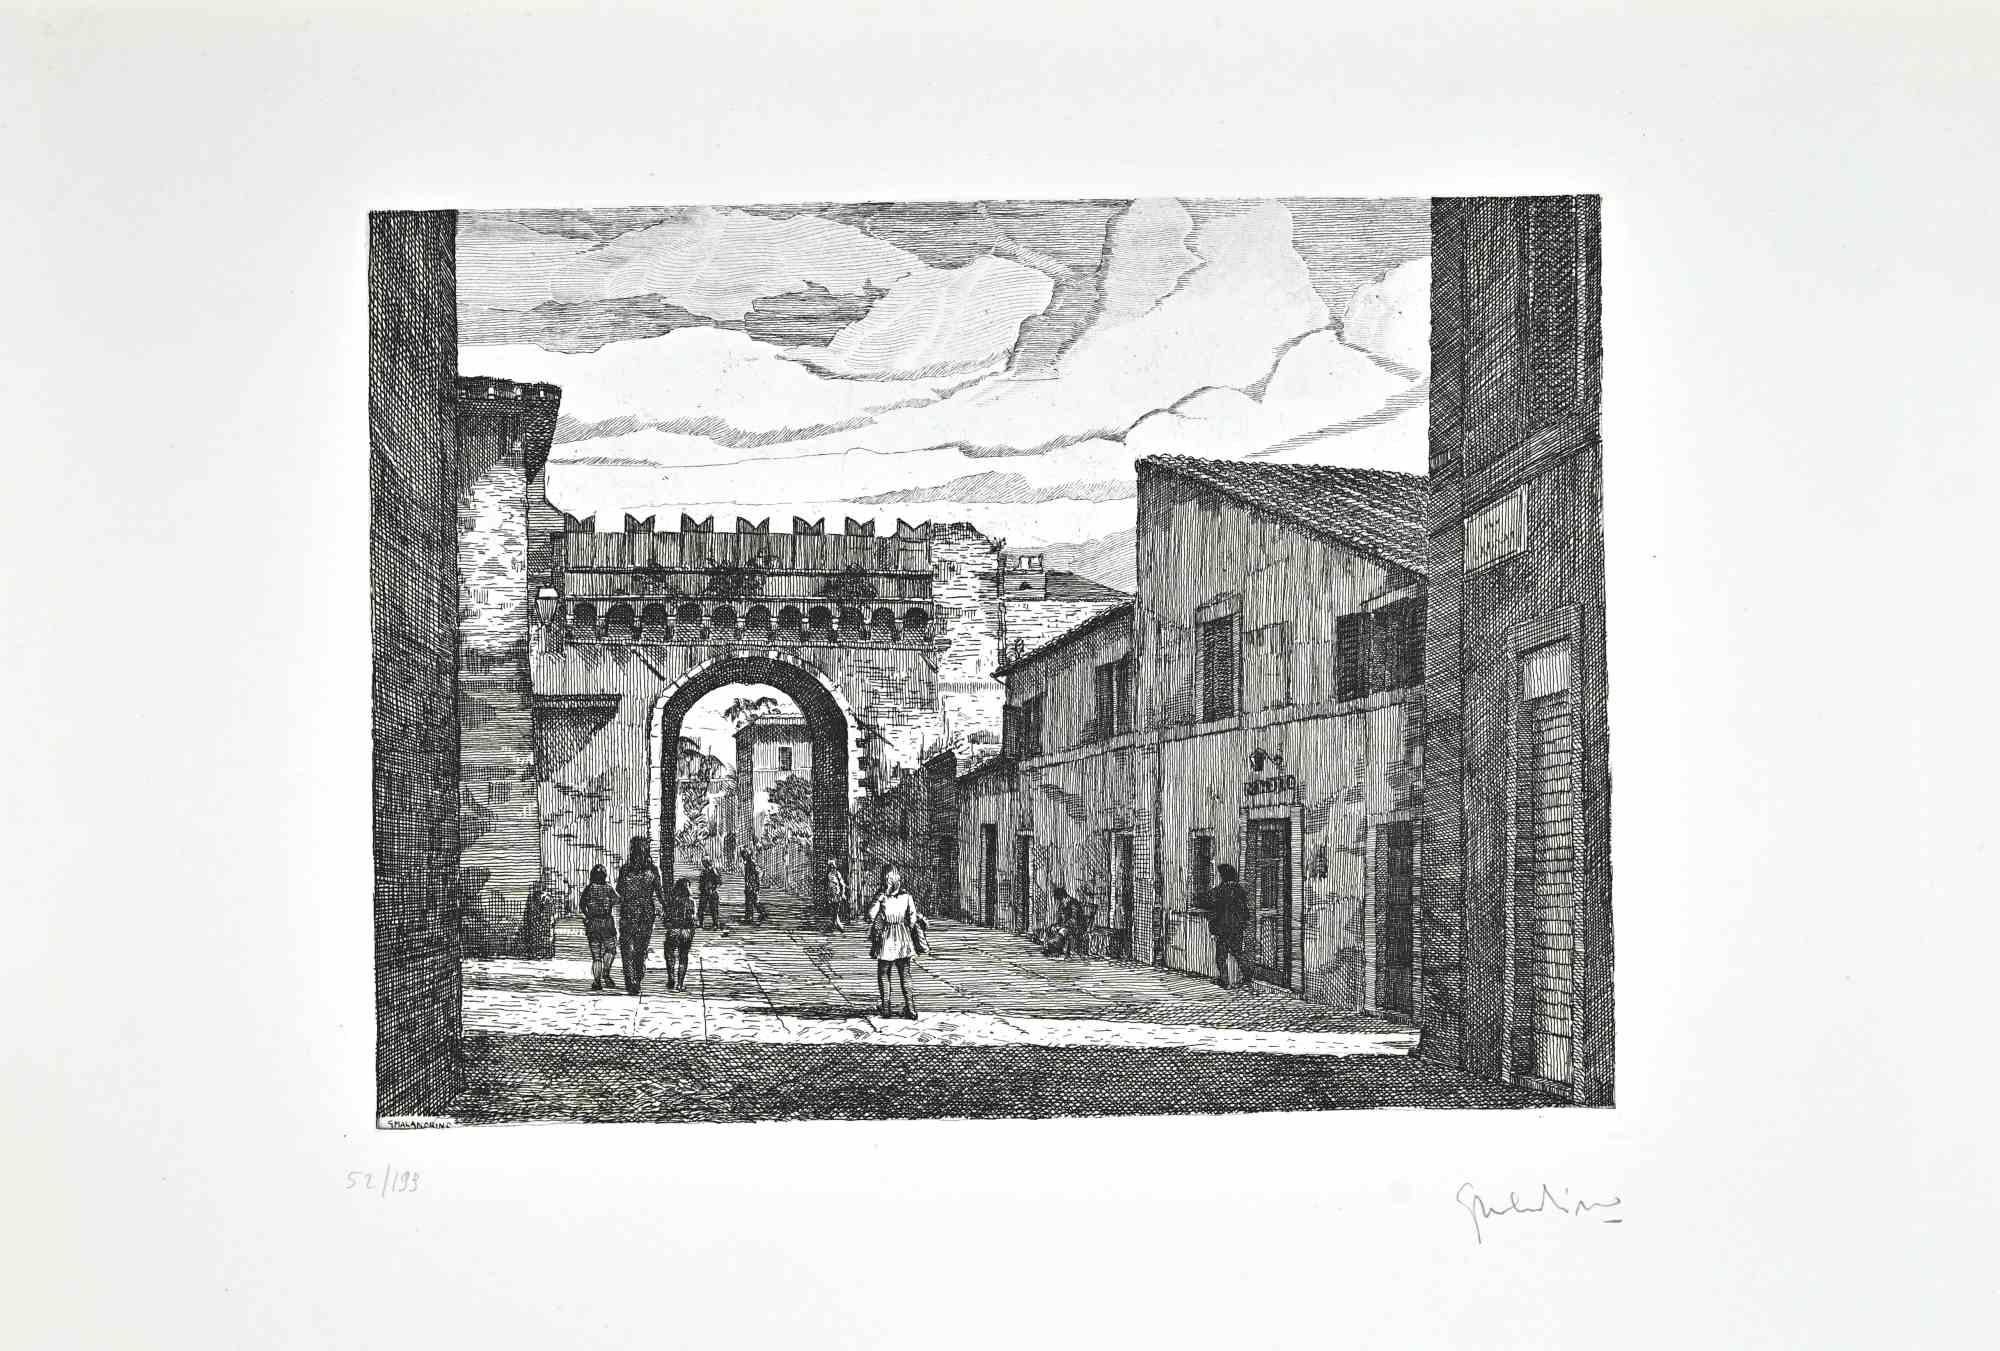 Borgo Pio - Rom ist ein Kunstwerk, das von Giuseppe Malandrino realisiert wurde.

Originaldruck in Ätztechnik.

Vom Künstler in der rechten unteren Ecke mit Bleistift handsigniert.

Nummerierte Ausgabe Nr. 52/199 in der unteren linken Ecke.

Gute